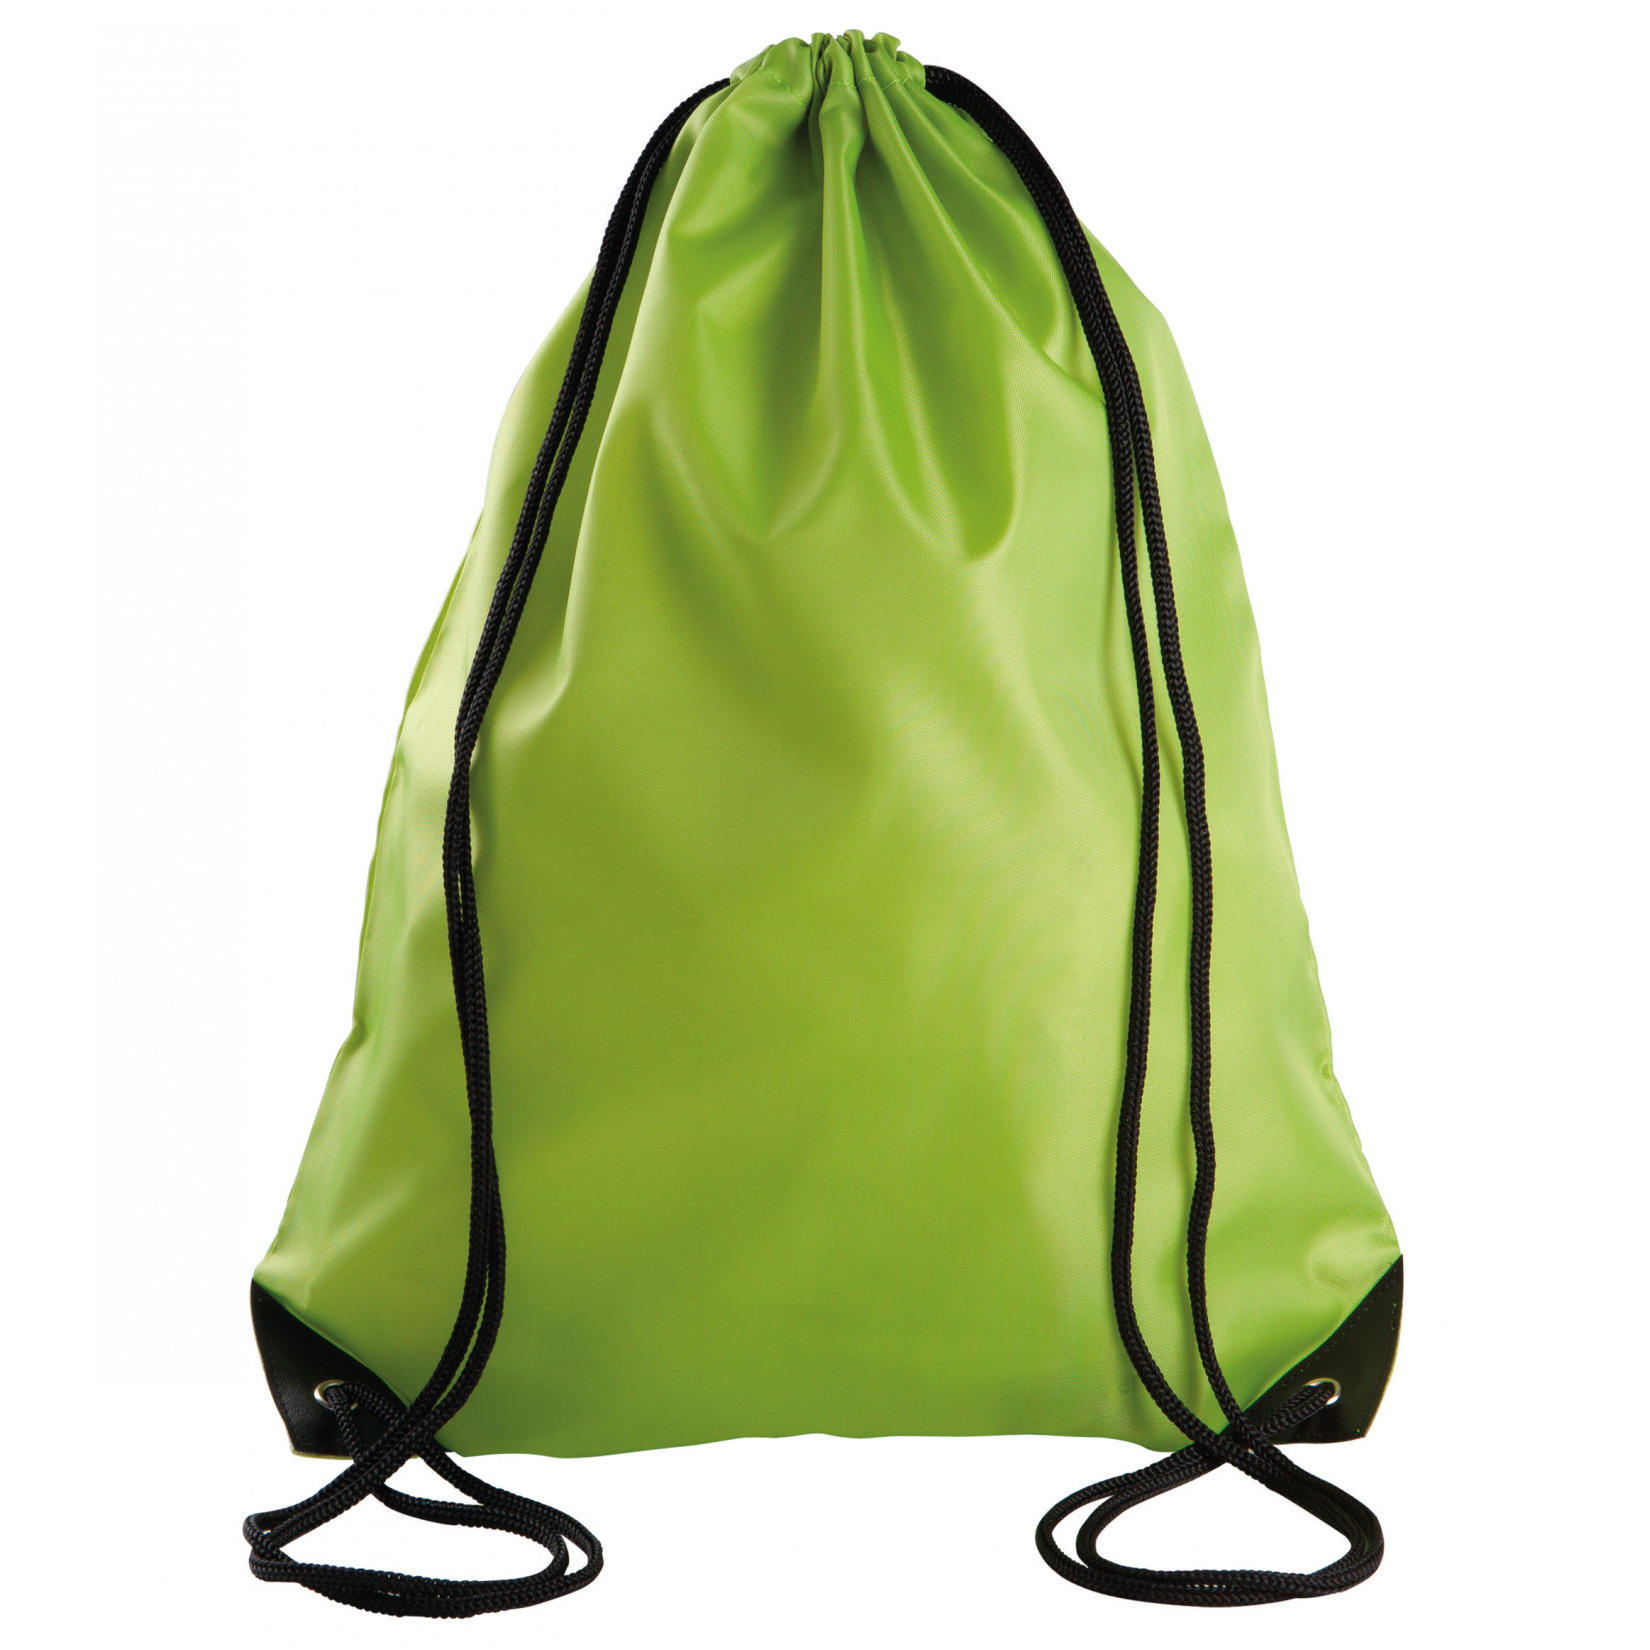 Sport gymtas-draagtas lime groen met rijgkoord 34 x 44 cm van polyester